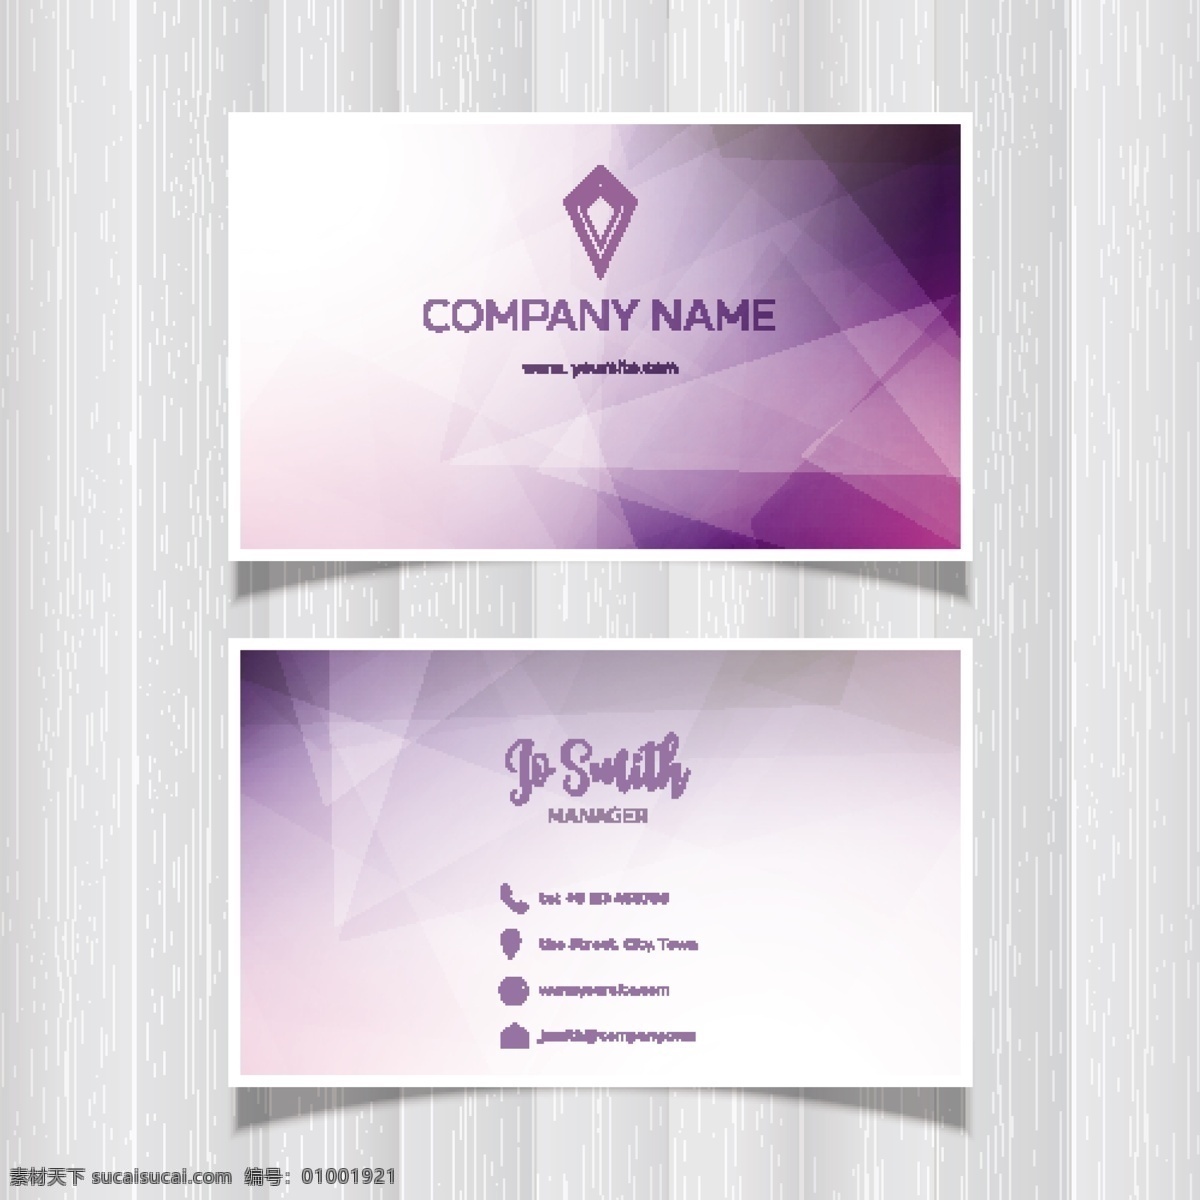 名片 布局 几何 标识 商务 抽象 卡片 办公室 模板 联系 介绍 公司 抽象标识 现代 文具 企业身份 身份 白色